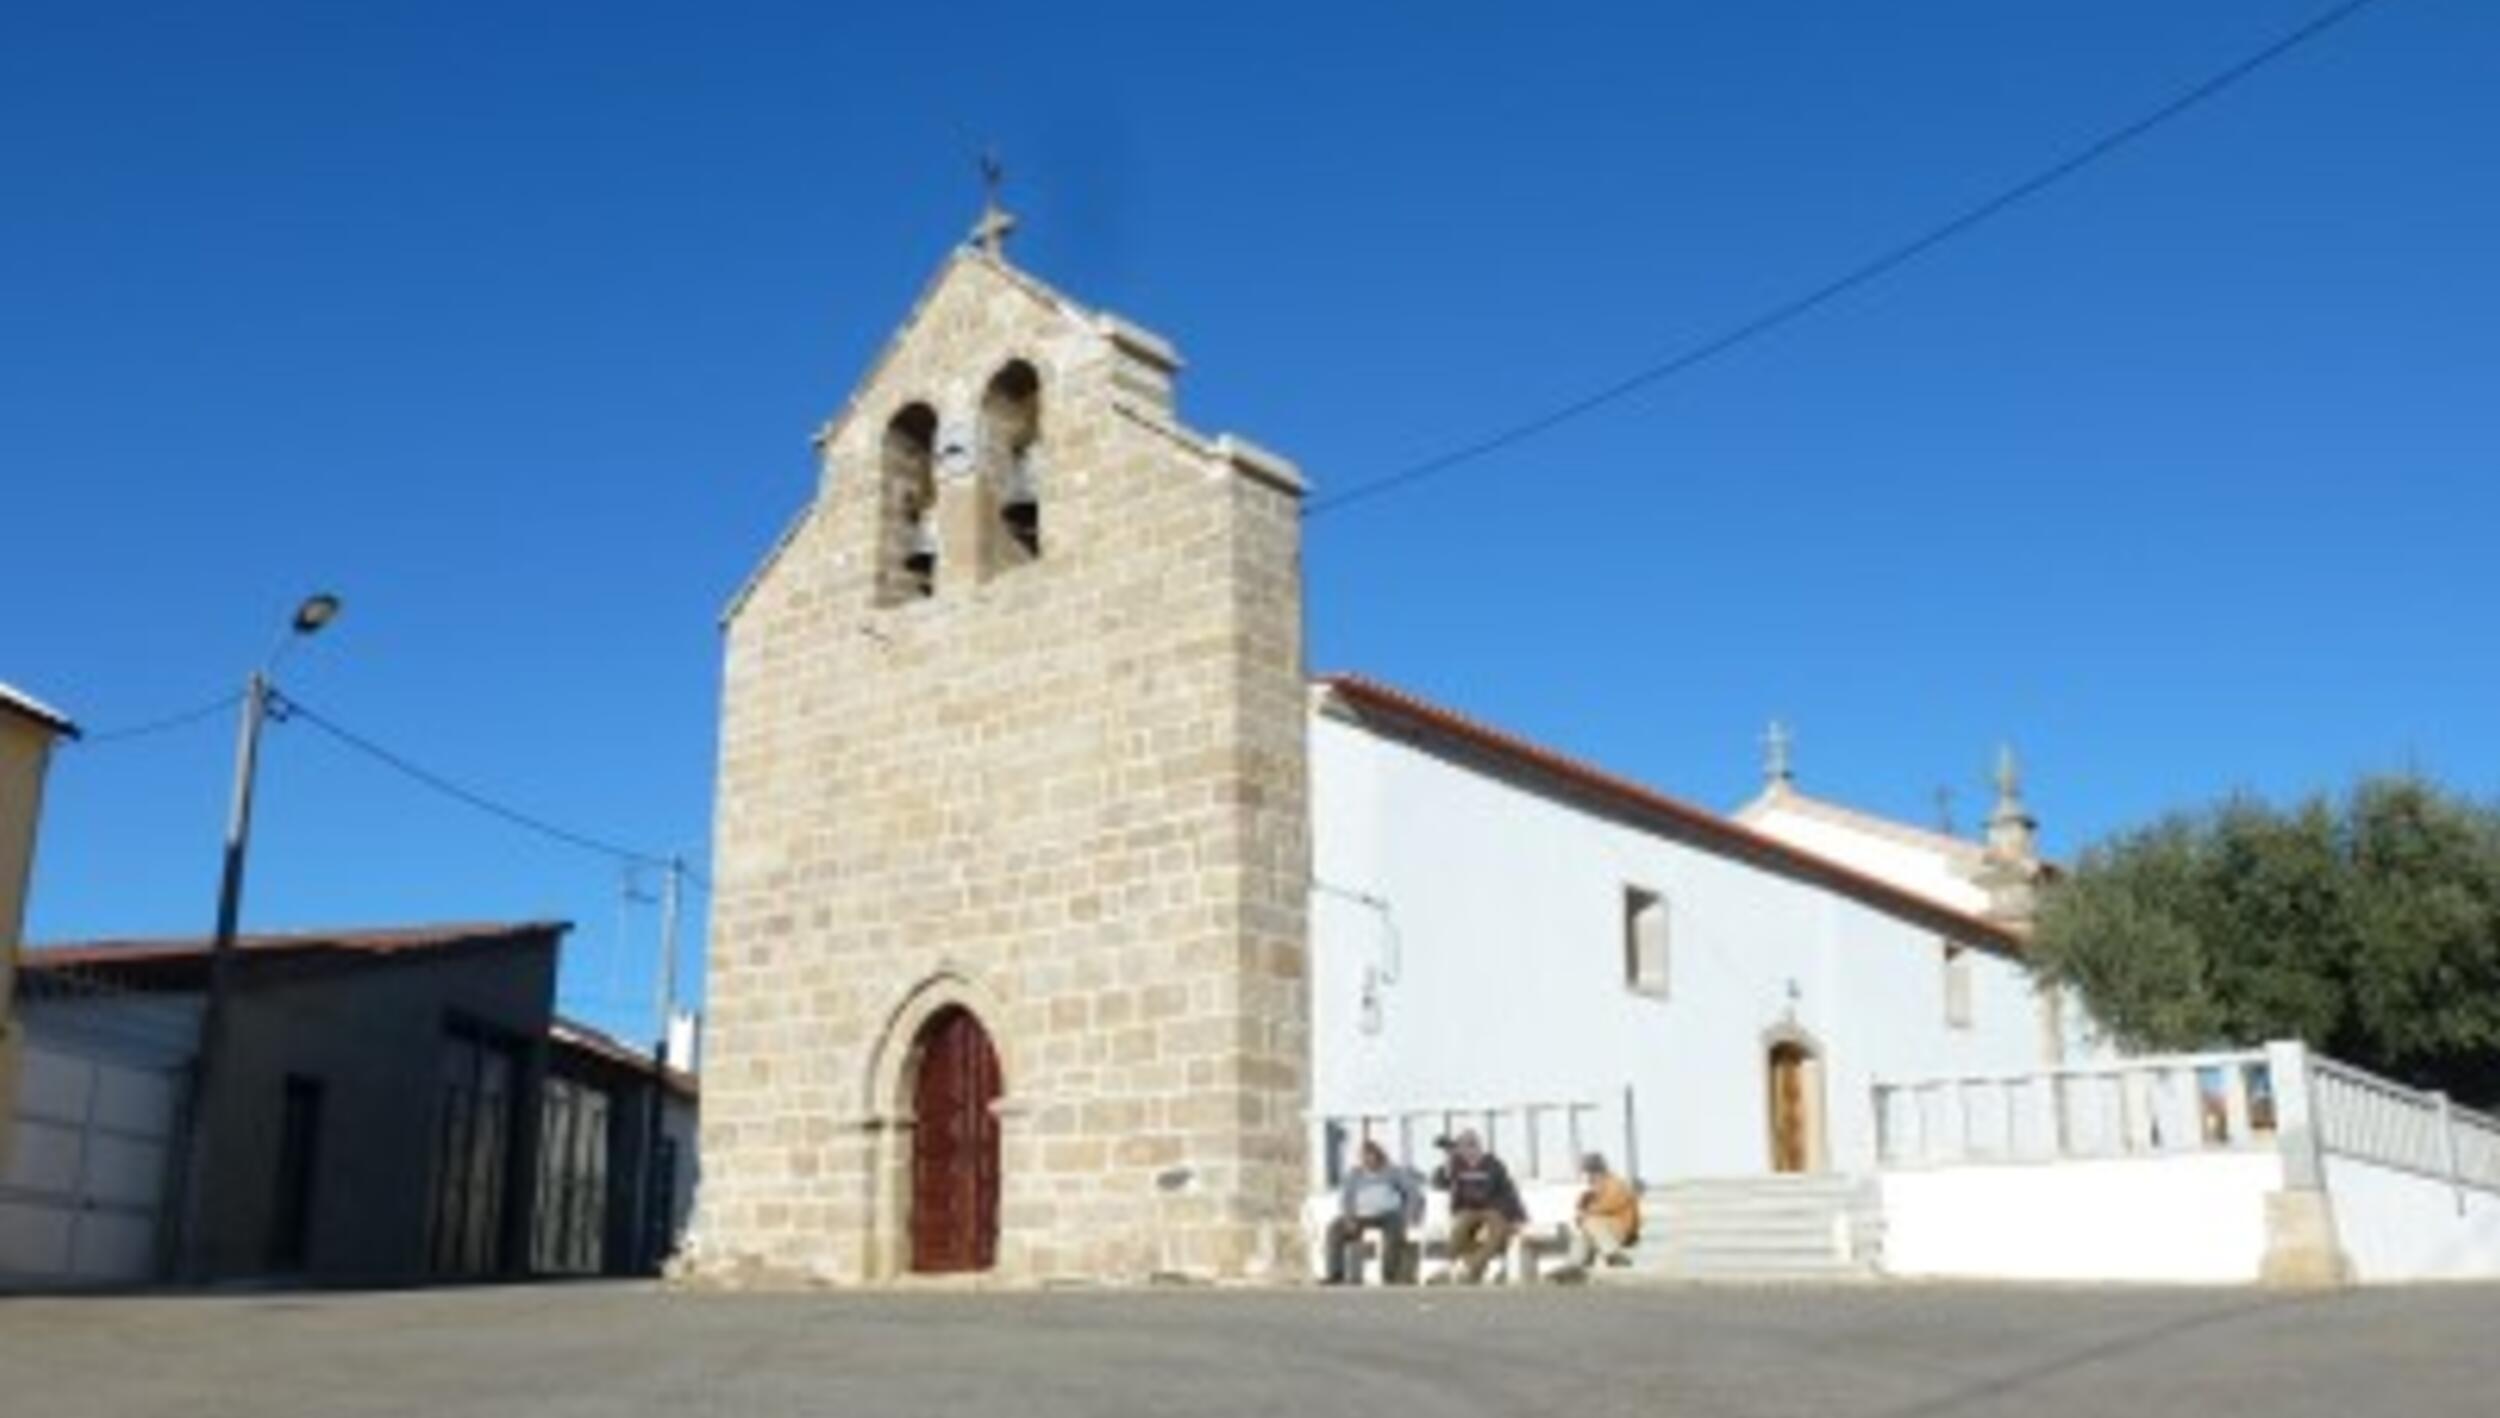 Igreja Matriz de Palaçoulo / Igreja de São Miguel